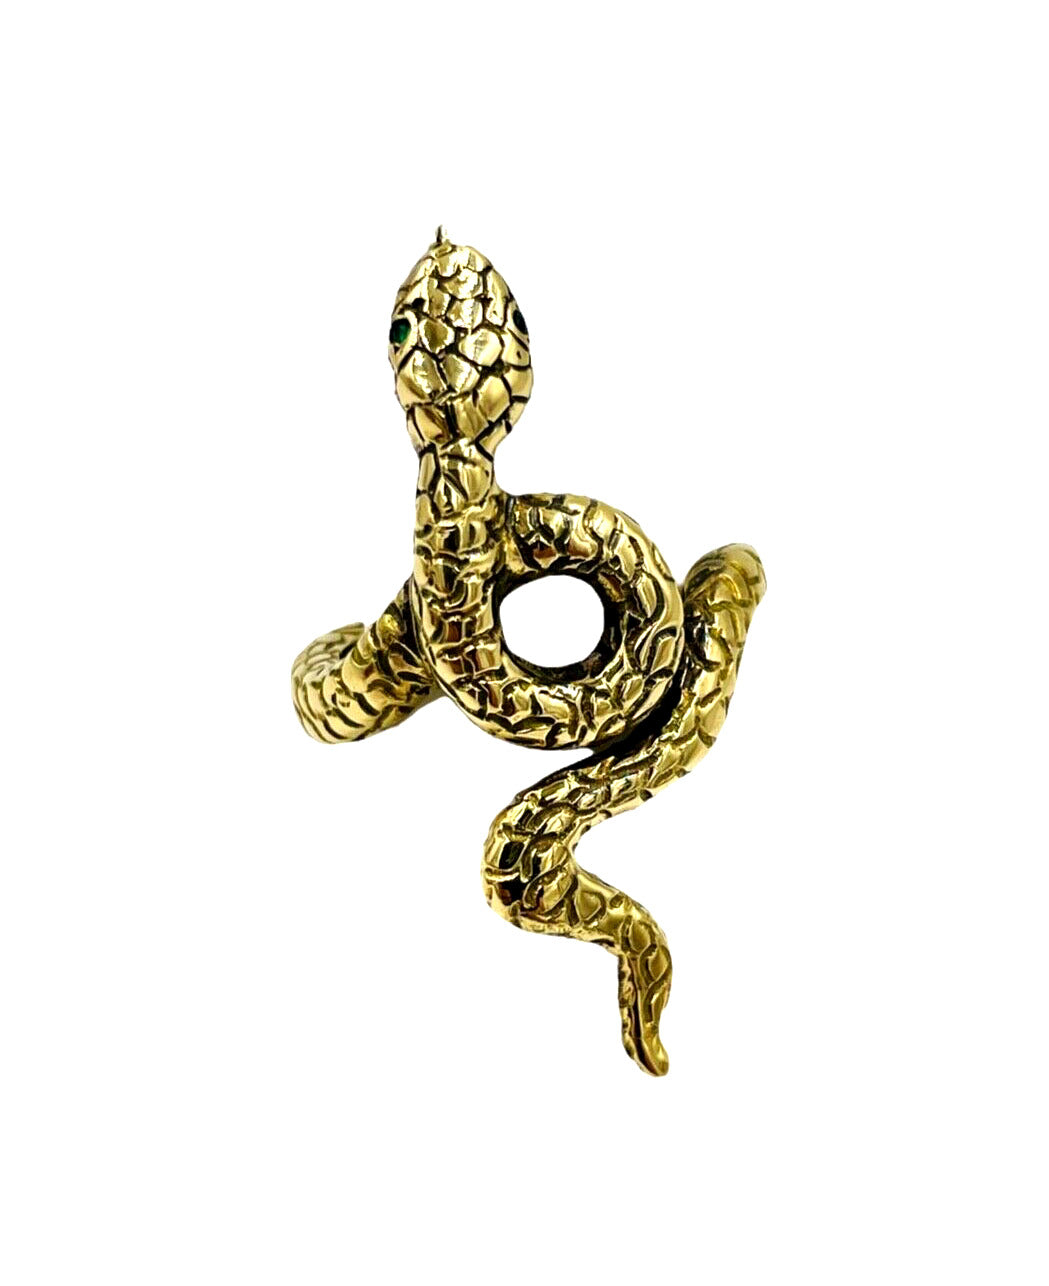 Designer signed 18k Yellow gold Snake Ring from Capri Italy